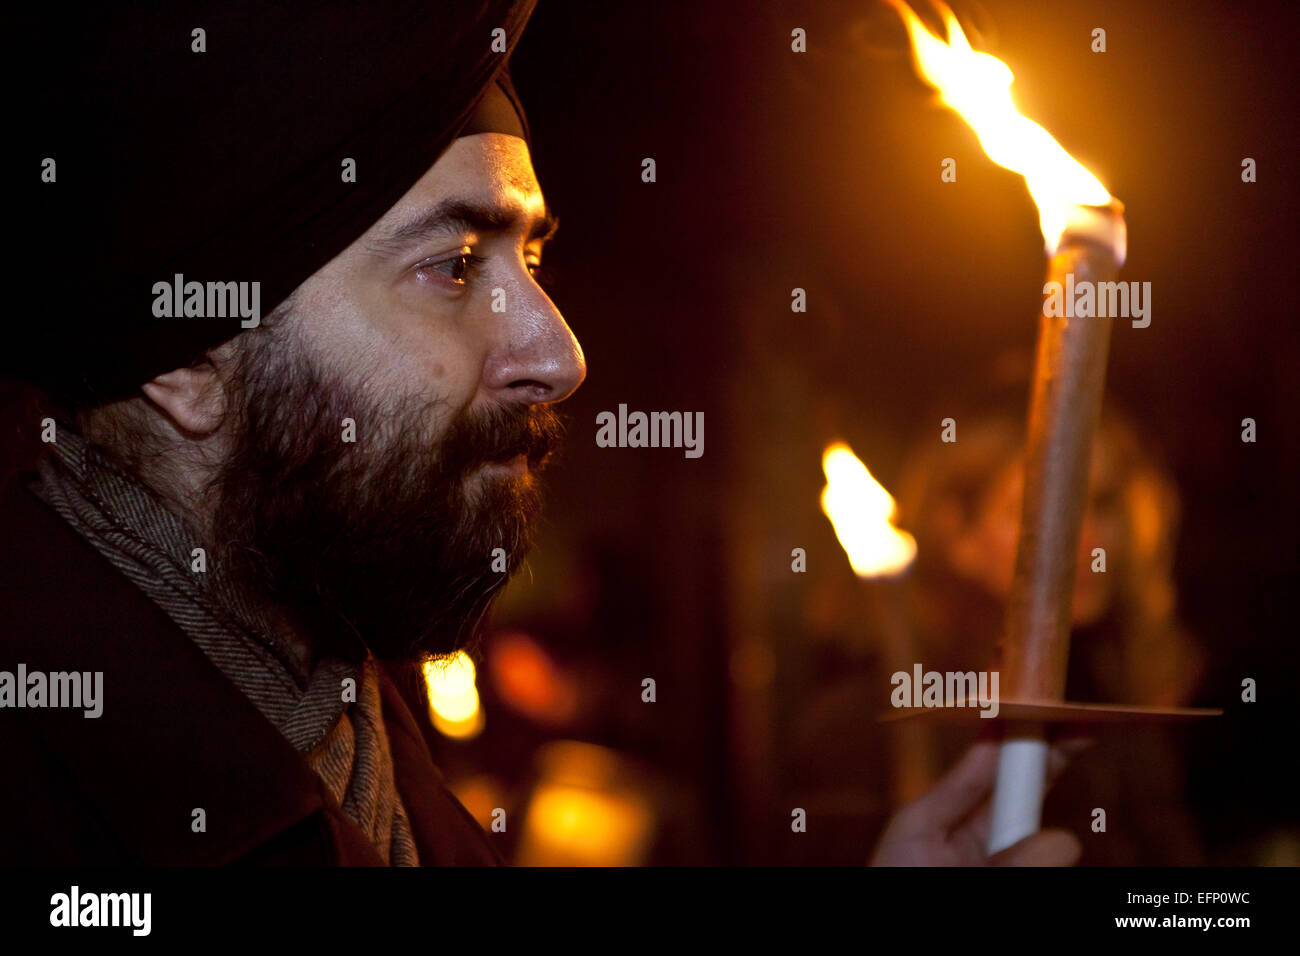 Kopenhagen, Dänemark, 8. Februar 2015: A Sikh geht zusammen mit Moslems, Christen und Juden in einem Fackelzug durch Kopenhagen.  Wie in anderen Städten auf der ganzen Welt feiern sie UN "World Interfaith Harmony Week", die heute Sonntag endet. Bildnachweis: OJPHOTOS/Alamy Live-Nachrichten Stockfoto